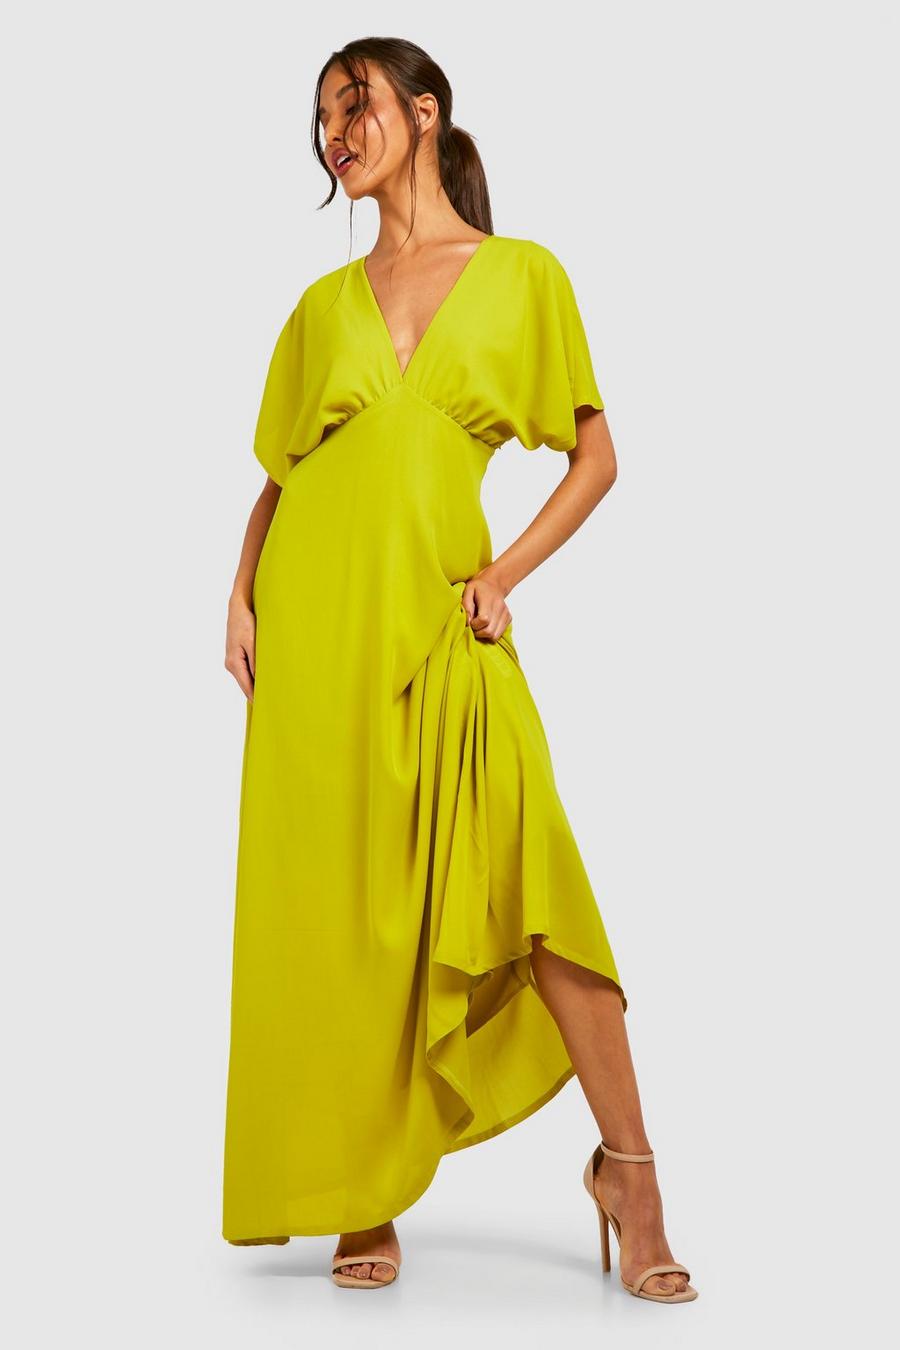 Chartreuse Chiffon Batwing Ruched Maxi Dress